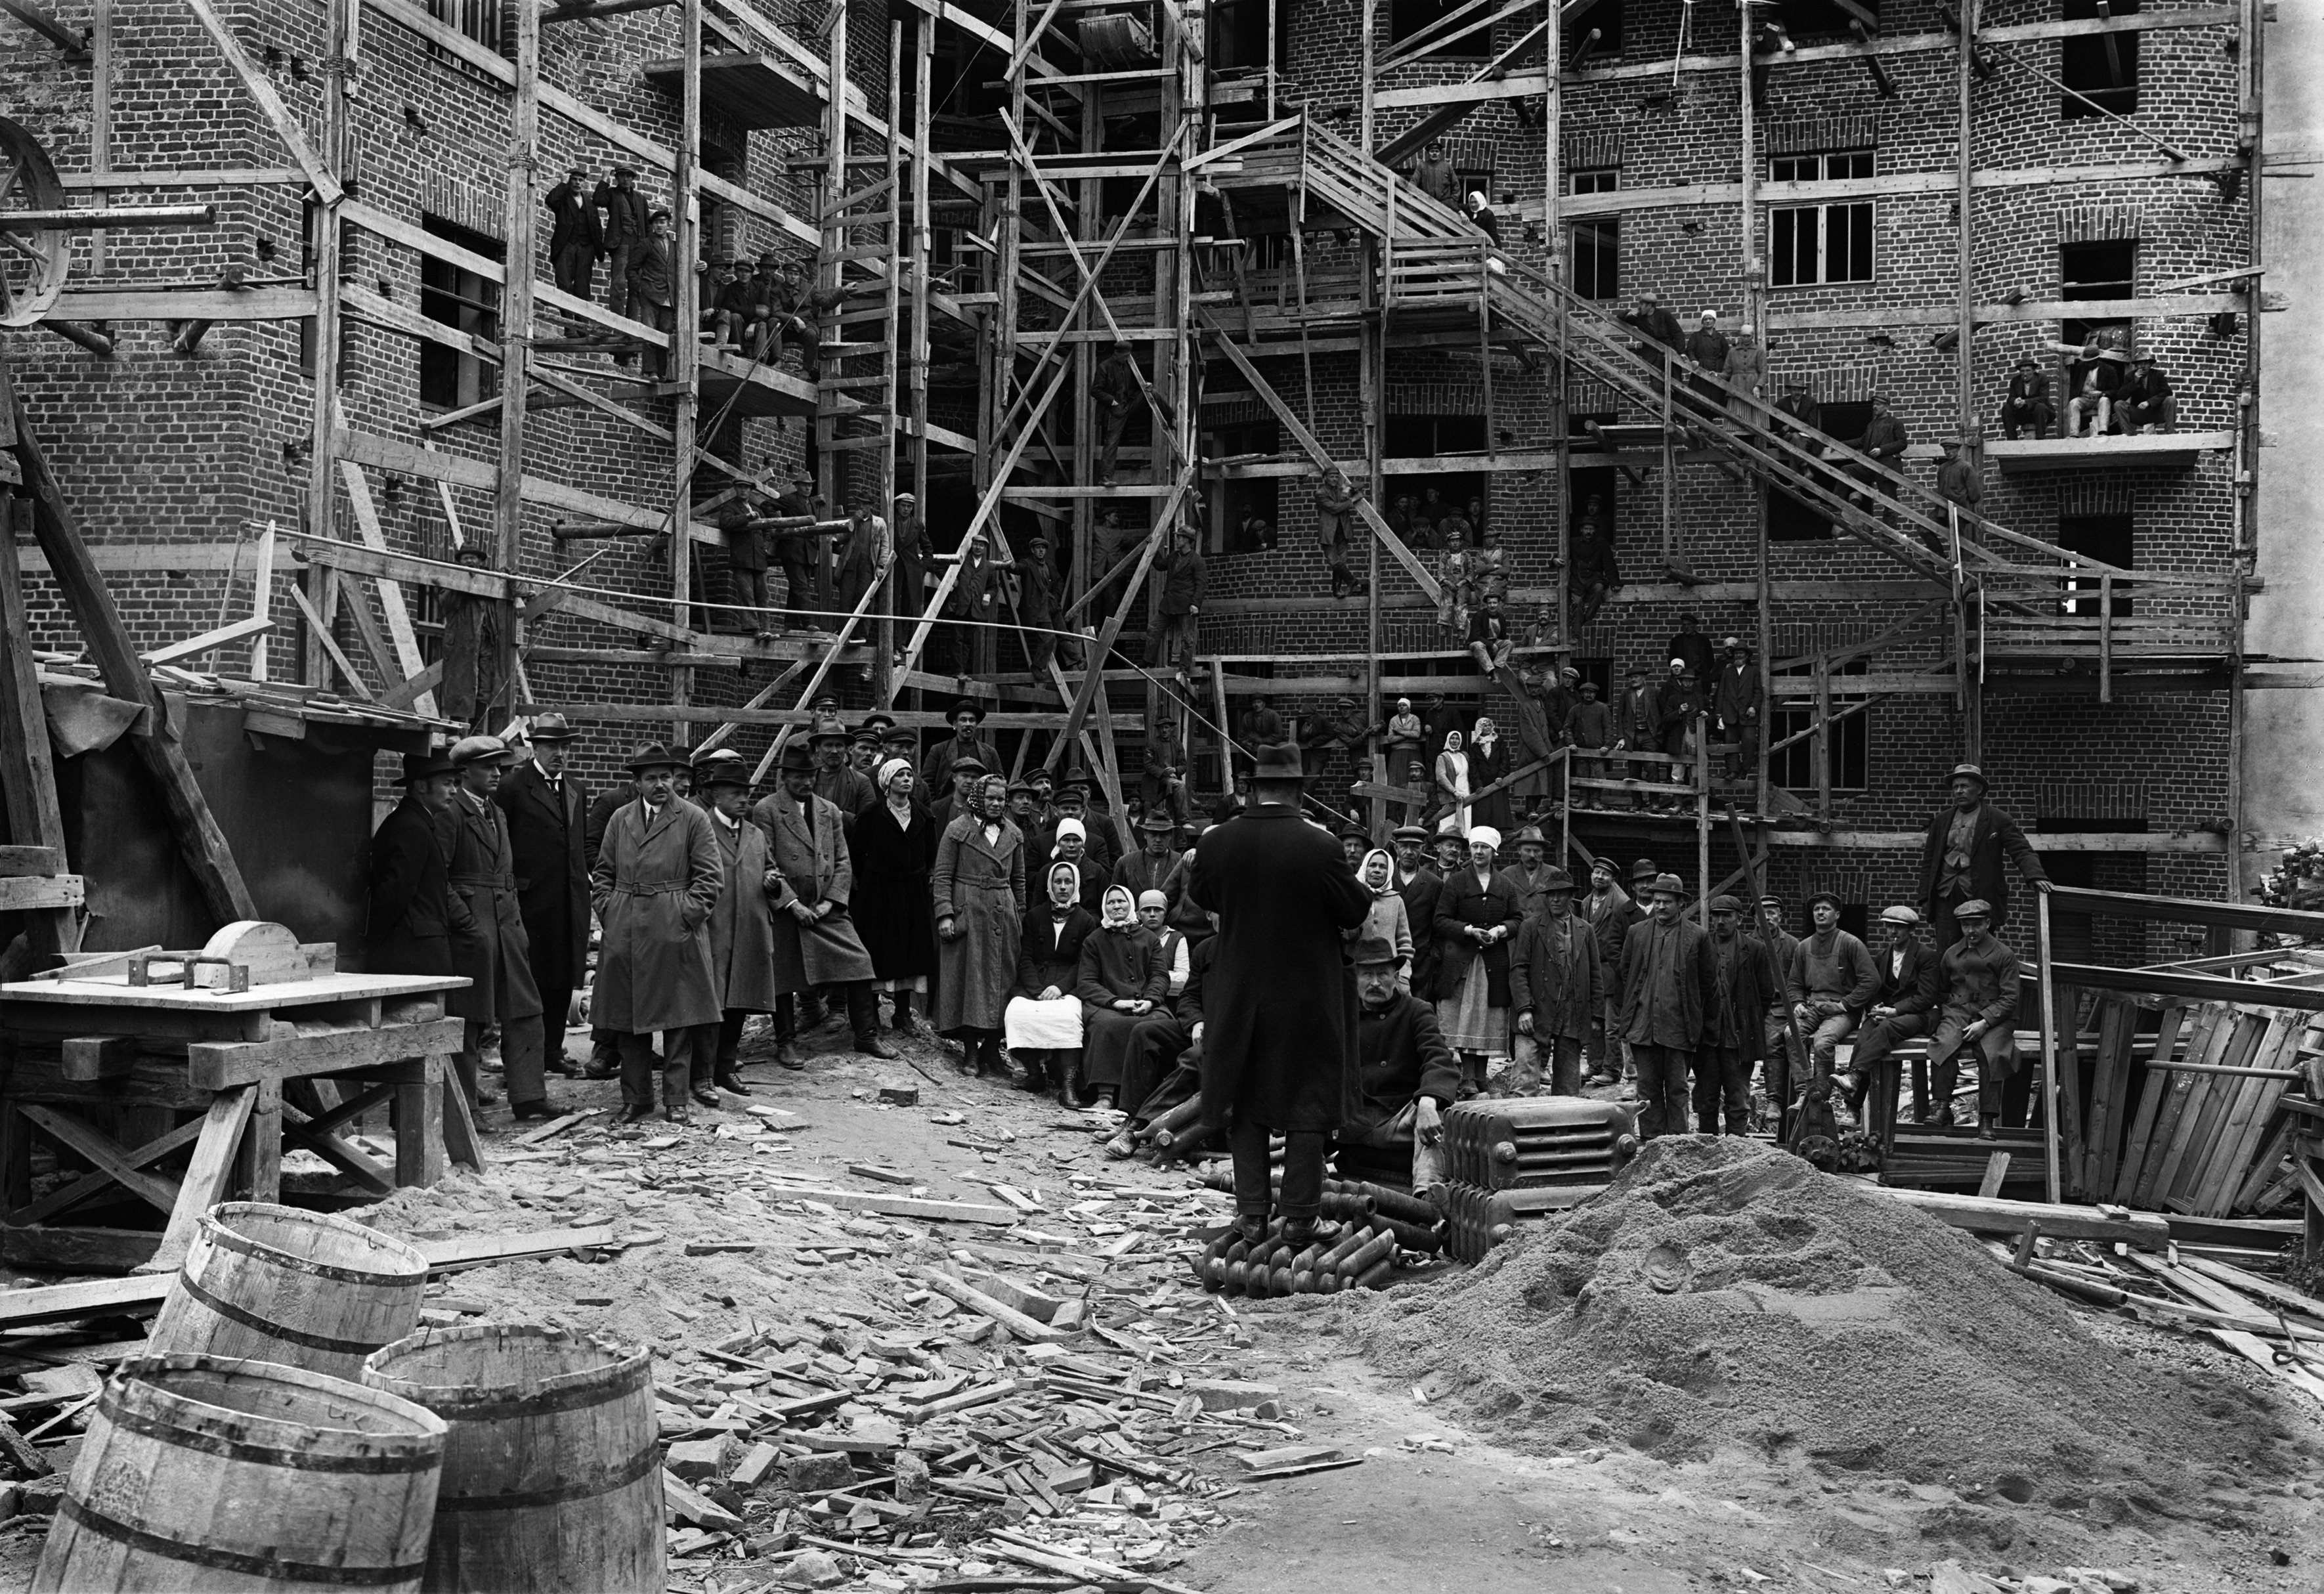 Rakennustyömaa osoitteessa Mannerheimintie 44 (ent. Läntinen Viertotie 22) - Dunckerinkatu 2 (Kulneffkatu 2 vuoteen 1928). Työväki kuuntelemassa puhetta työmaalla sisäpihalla.